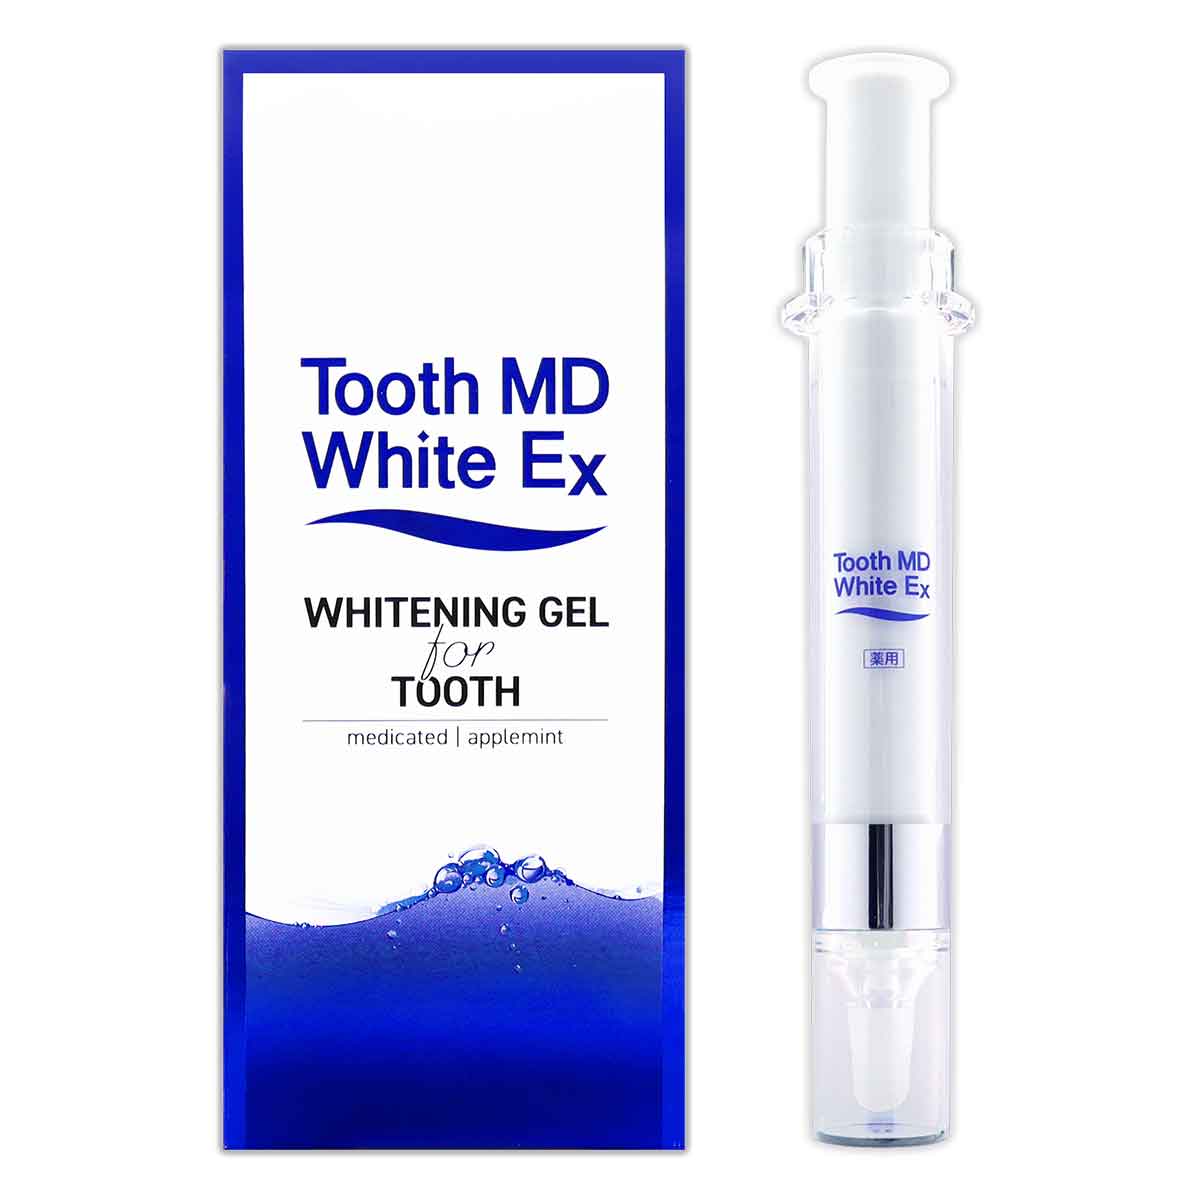 トゥースMDホワイトEX Tooth MD White Ex 11ml ( 約30日分 ) メール便送料無料NYH /  トゥースMDホワイトEXFS05-03 / TMDWEX-01P